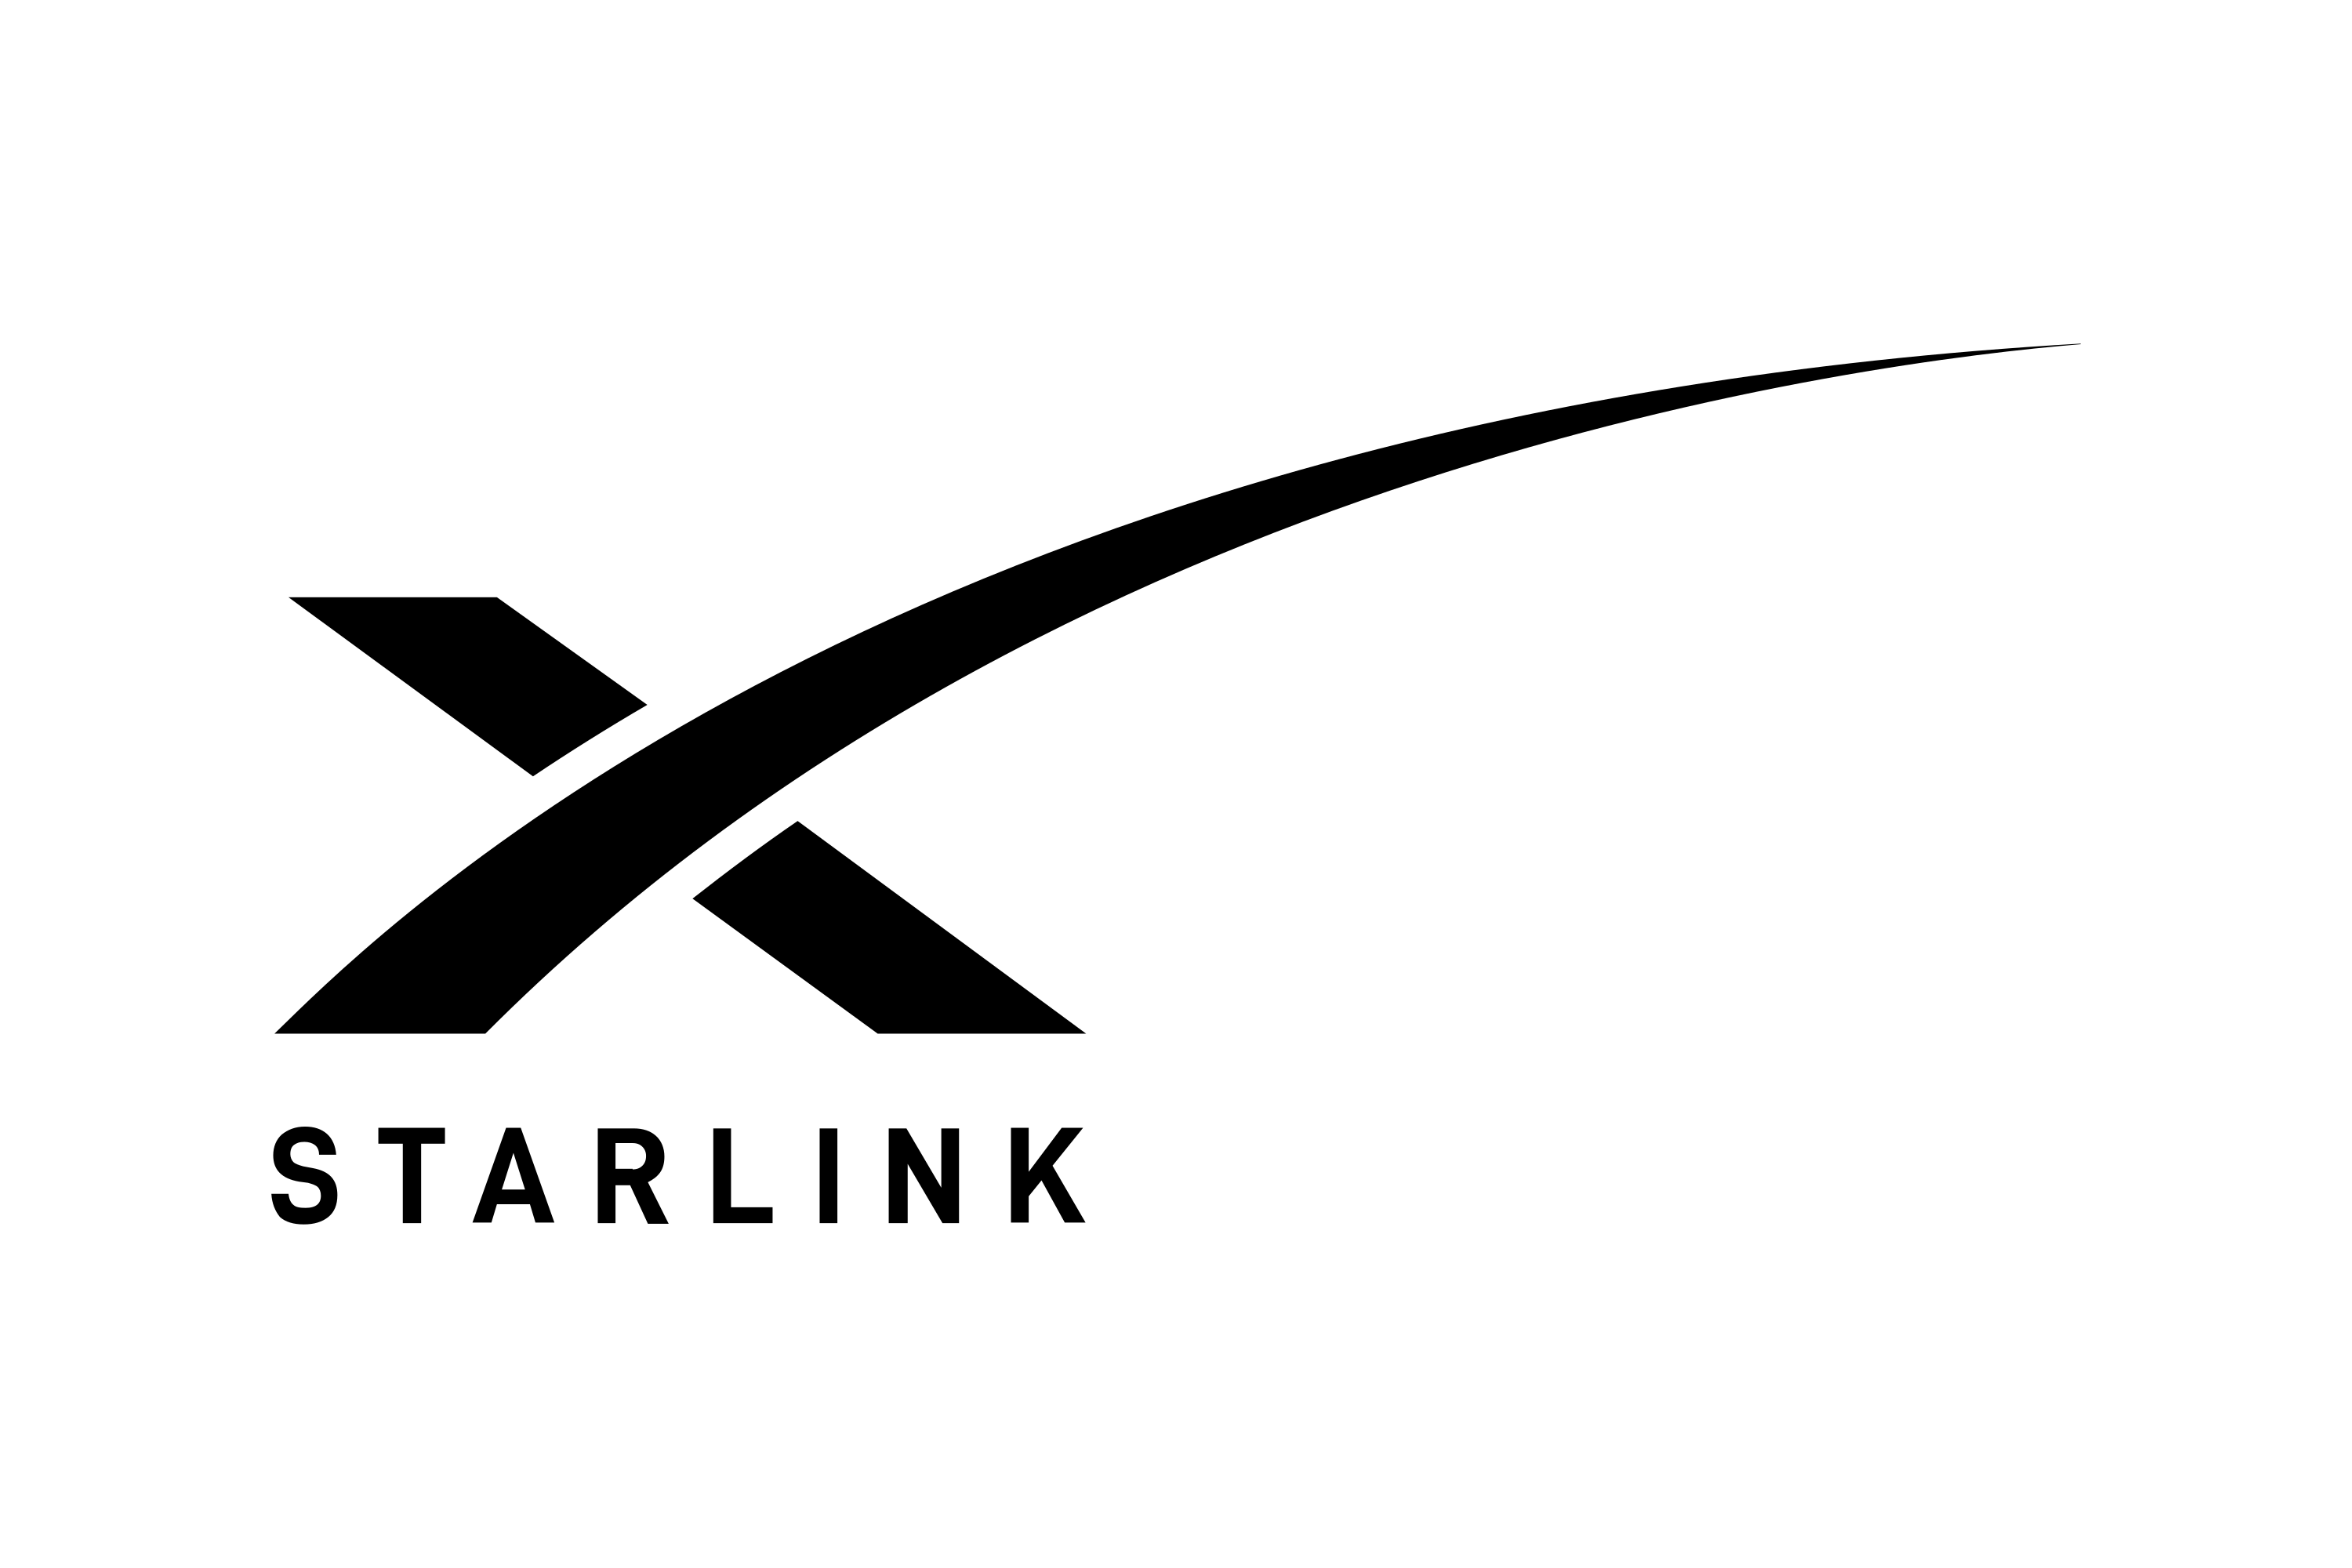 Download Starlink Logo in SVG Vector or PNG File Format - Logo.wine